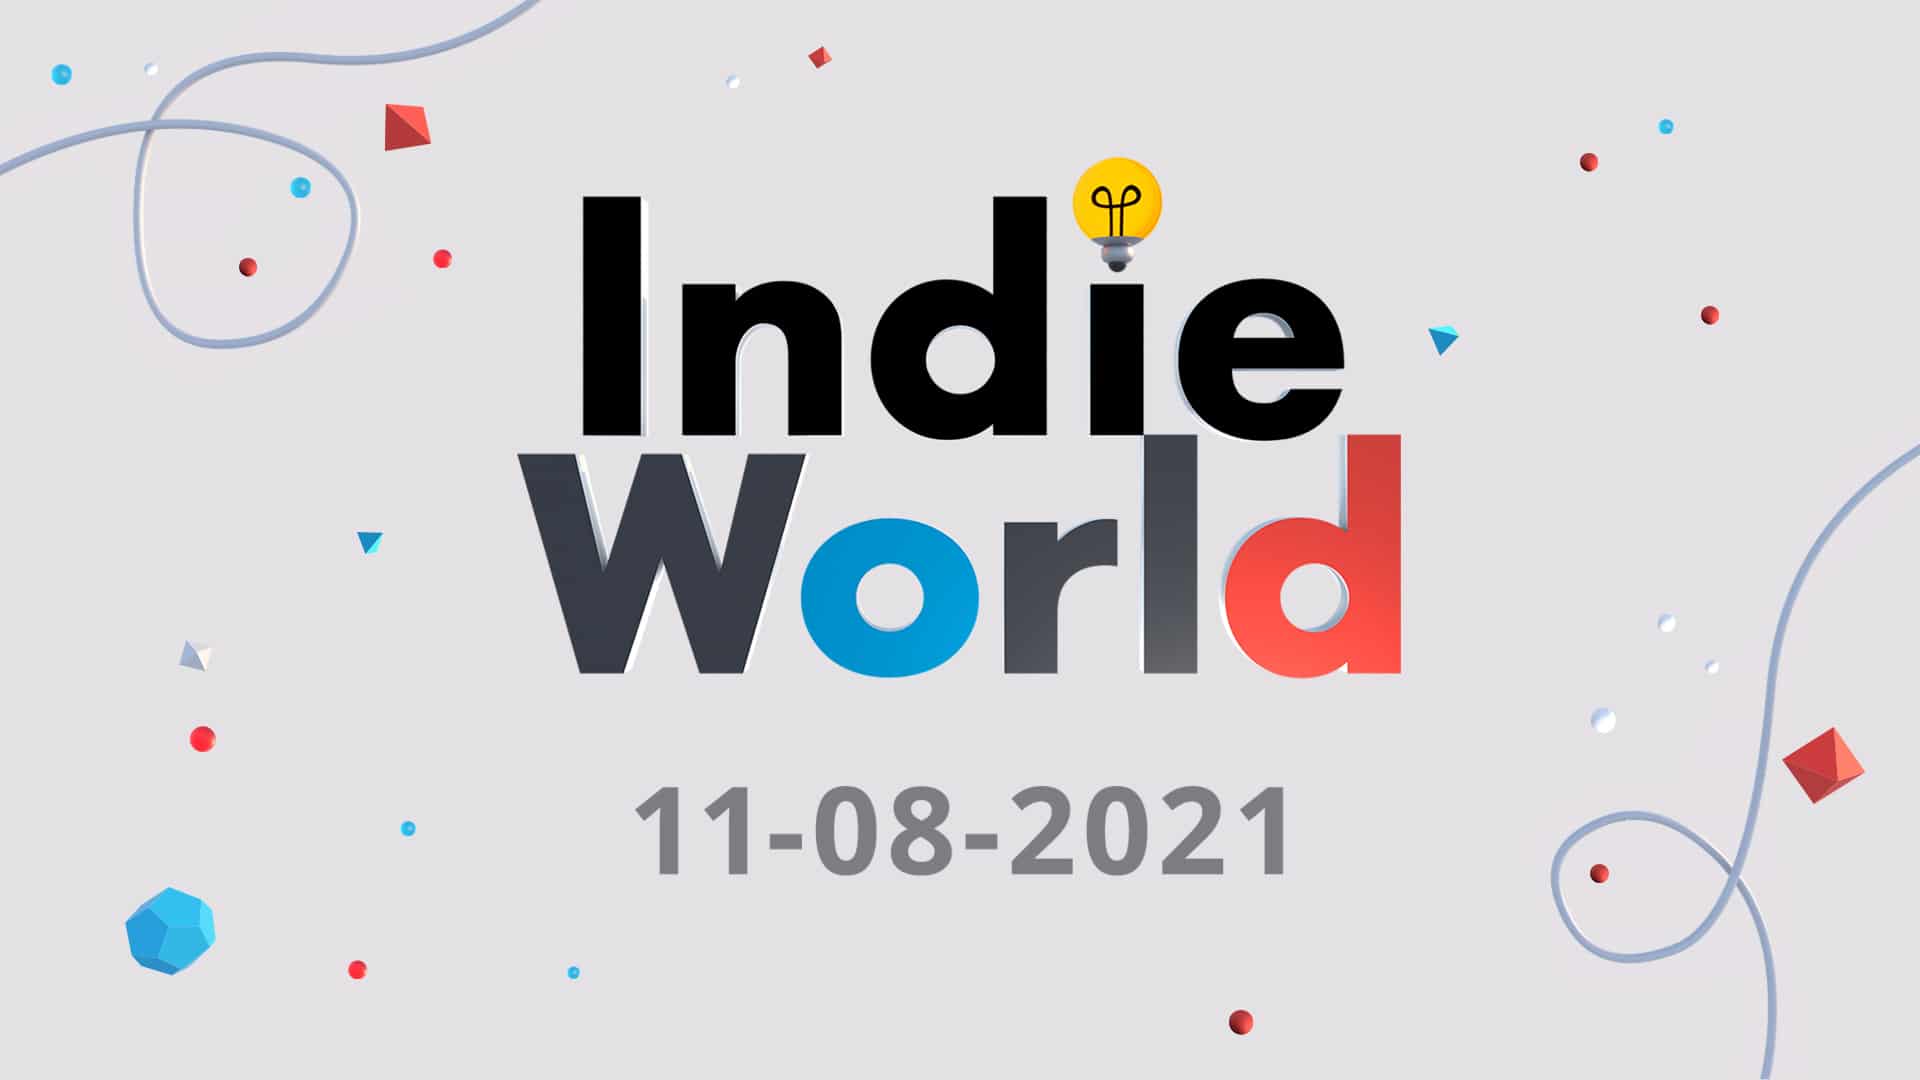 Nintendo anuncia una nueva presentación Indie World Showcase para mañana: horarios y detalles